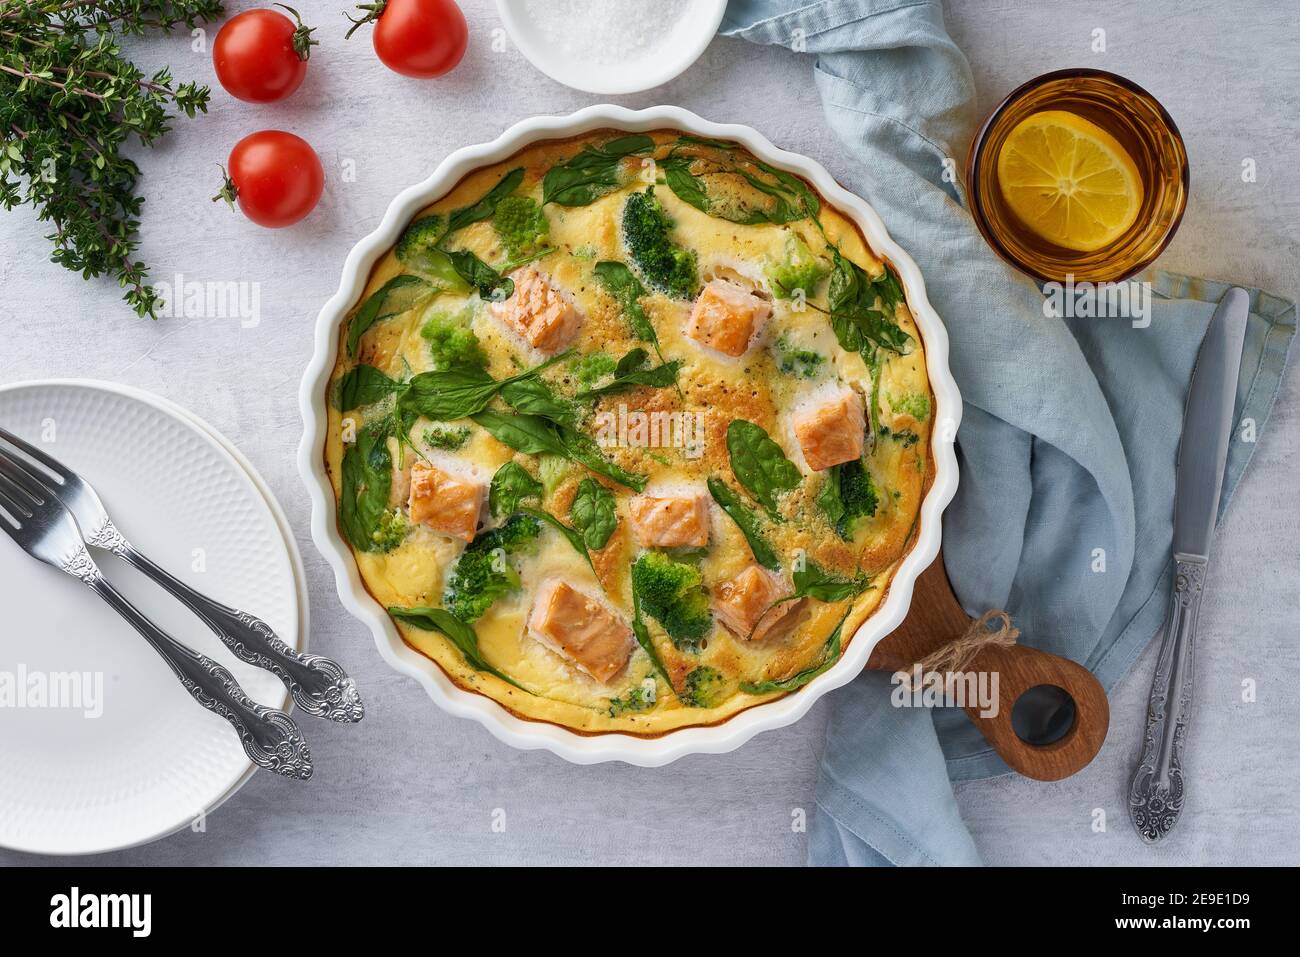 Frittata auf Eierbasis, Omelette mit Lachs, Brokkoli und Spinat, Draufsicht  Stockfotografie - Alamy